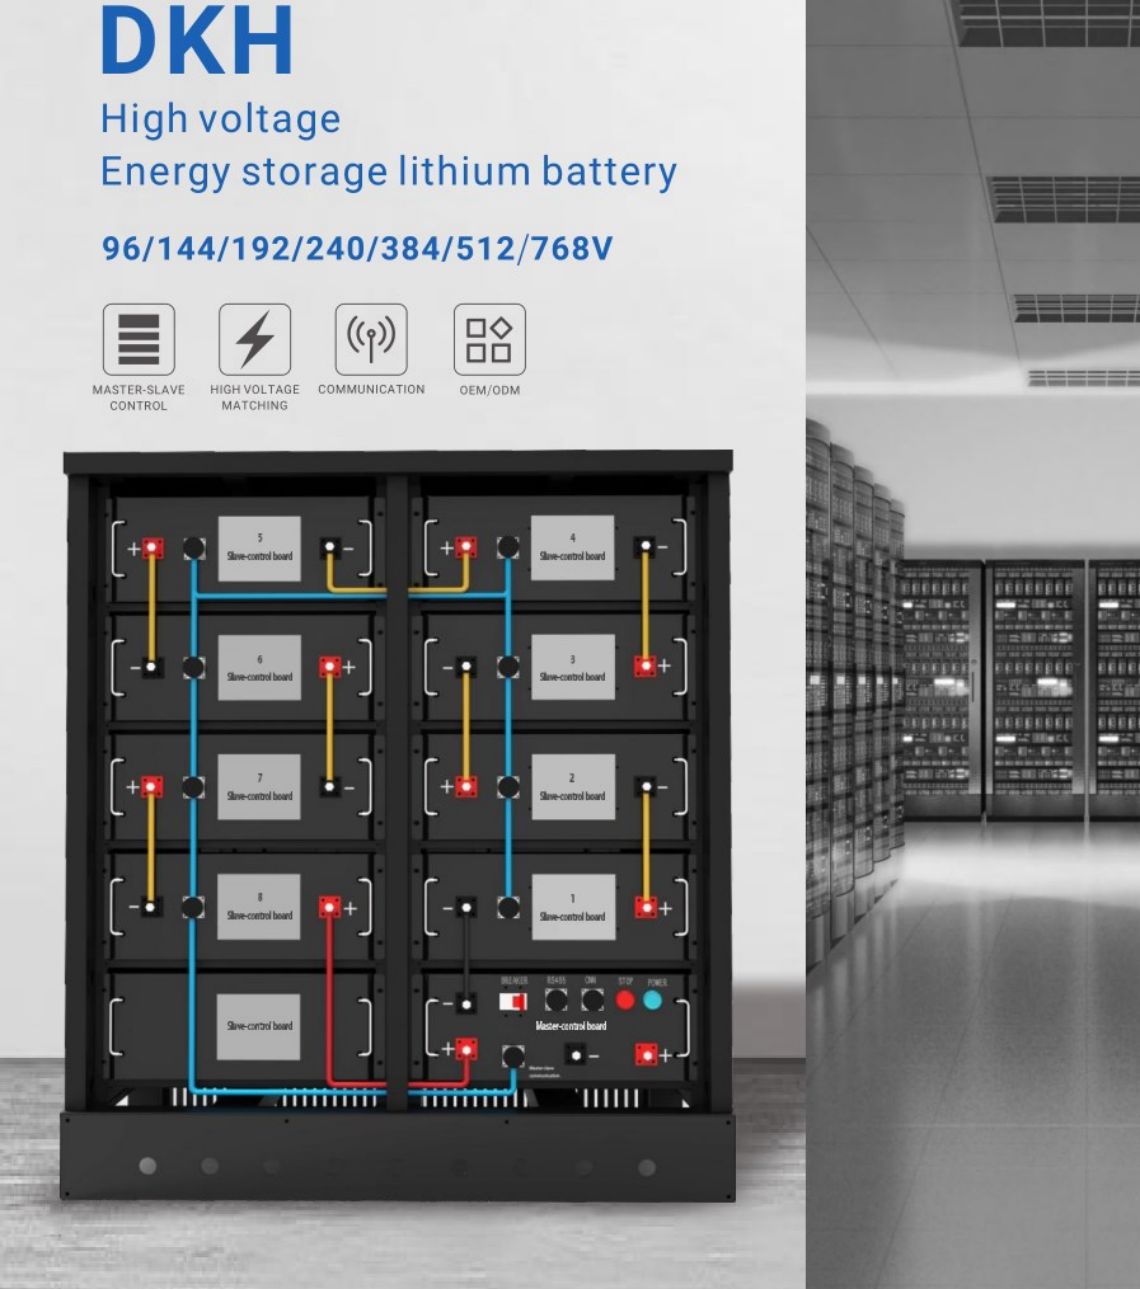 Sistemi i baterive litium për ruajtjen e energjisë me tension të lartë